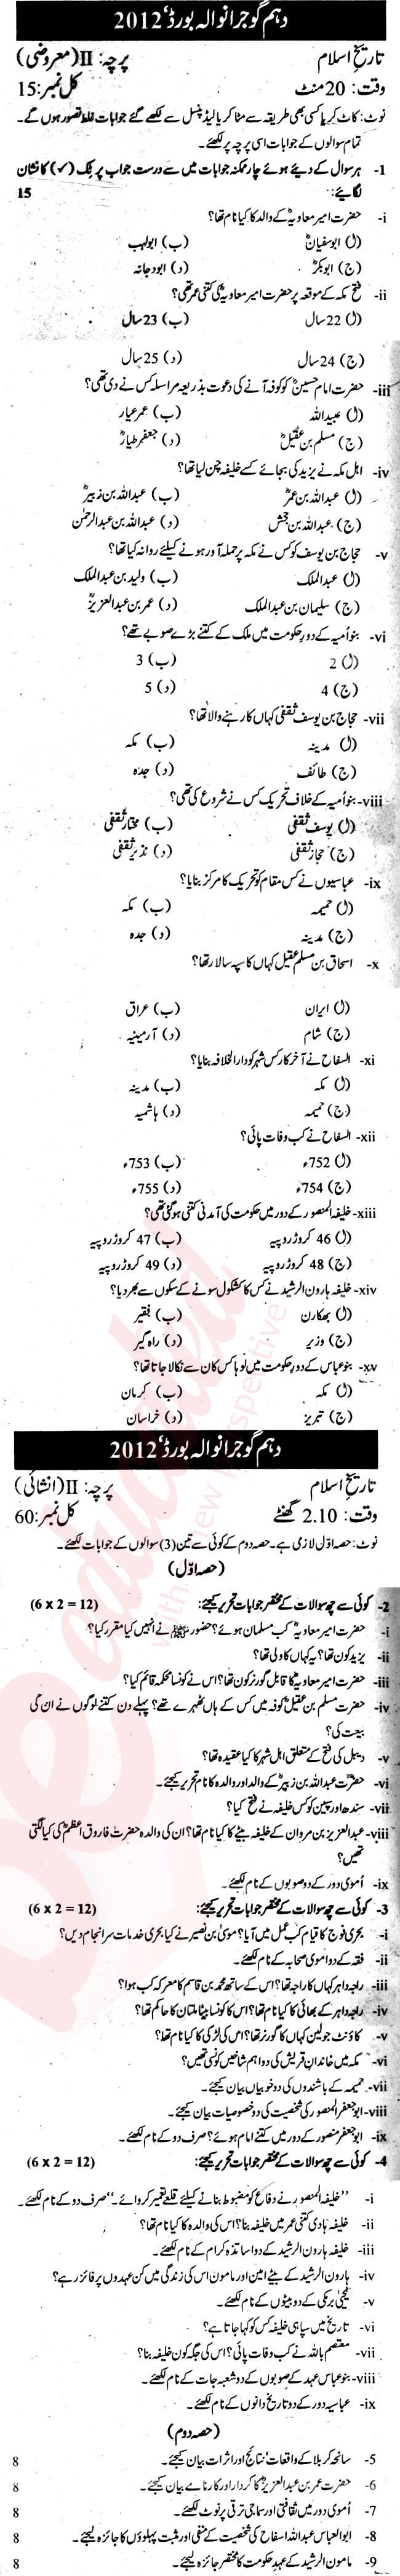 Pakistan History 10th Urdu Medium Past Paper Group 2 BISE Gujranwala 2012